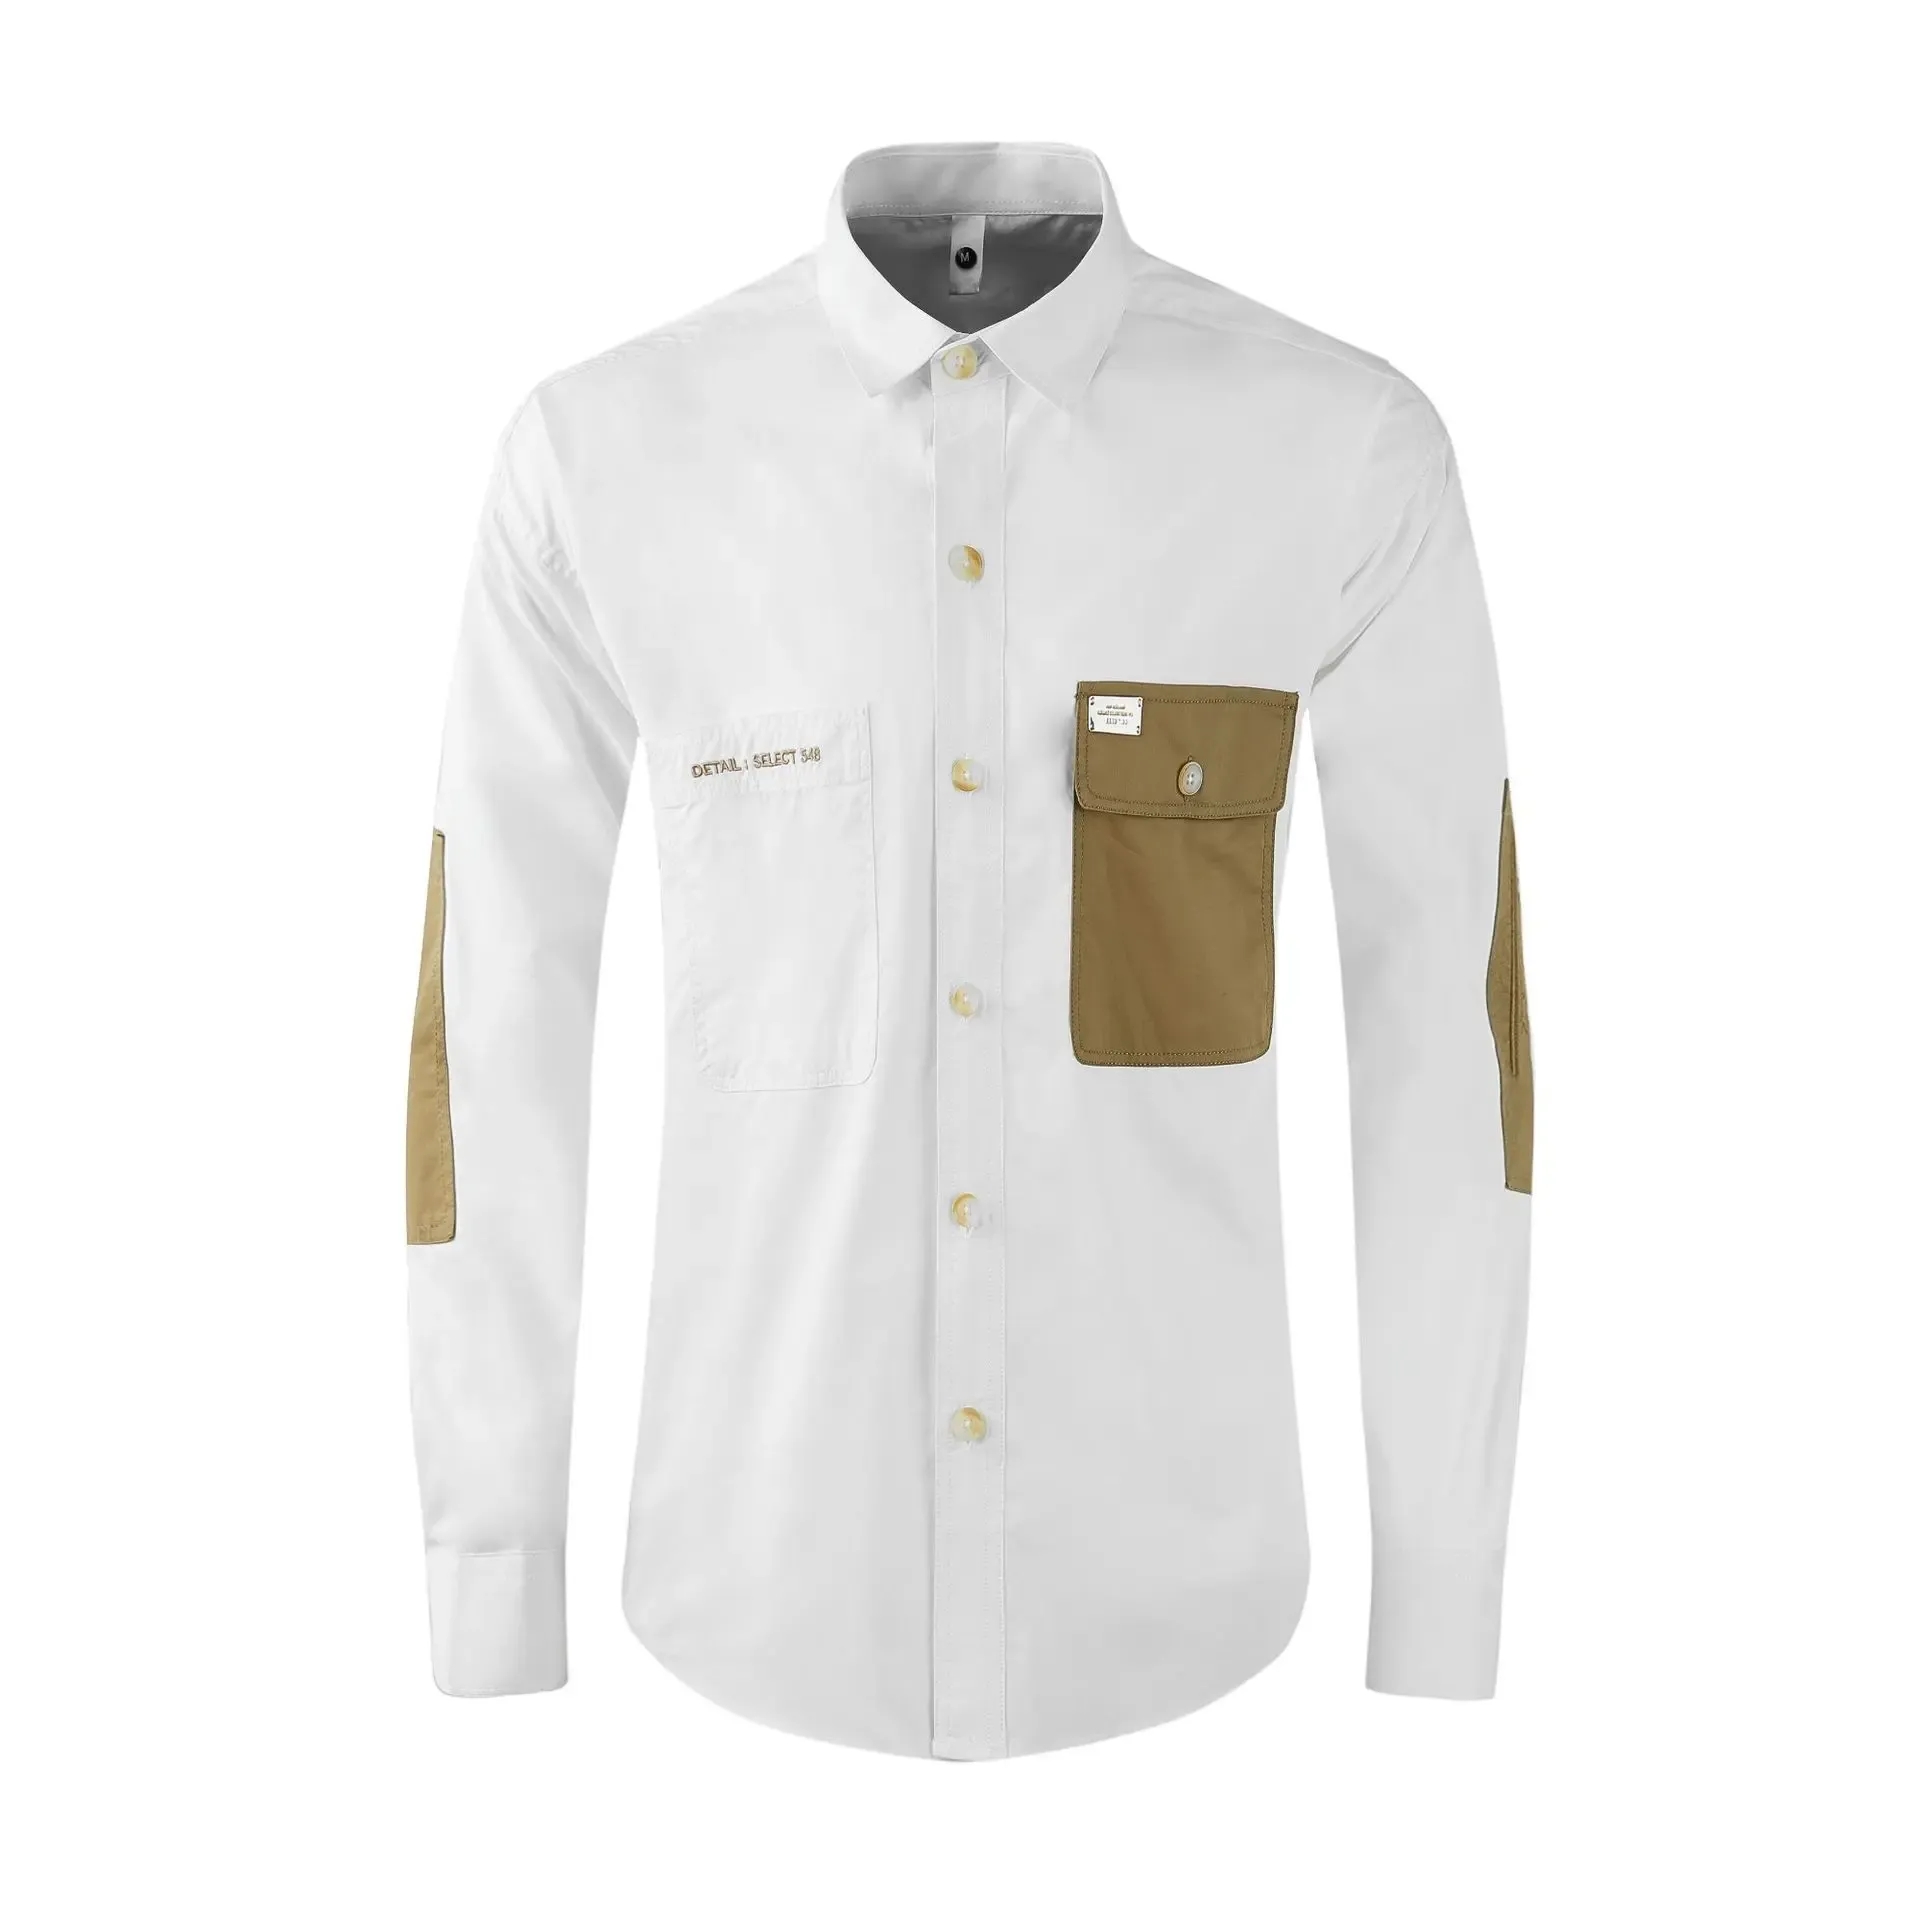 Hoge kwaliteit luxe sieraden mannen dragen casual zak herenkleding nieuwste ontwerpen 100% katoenen shirts voor mannen